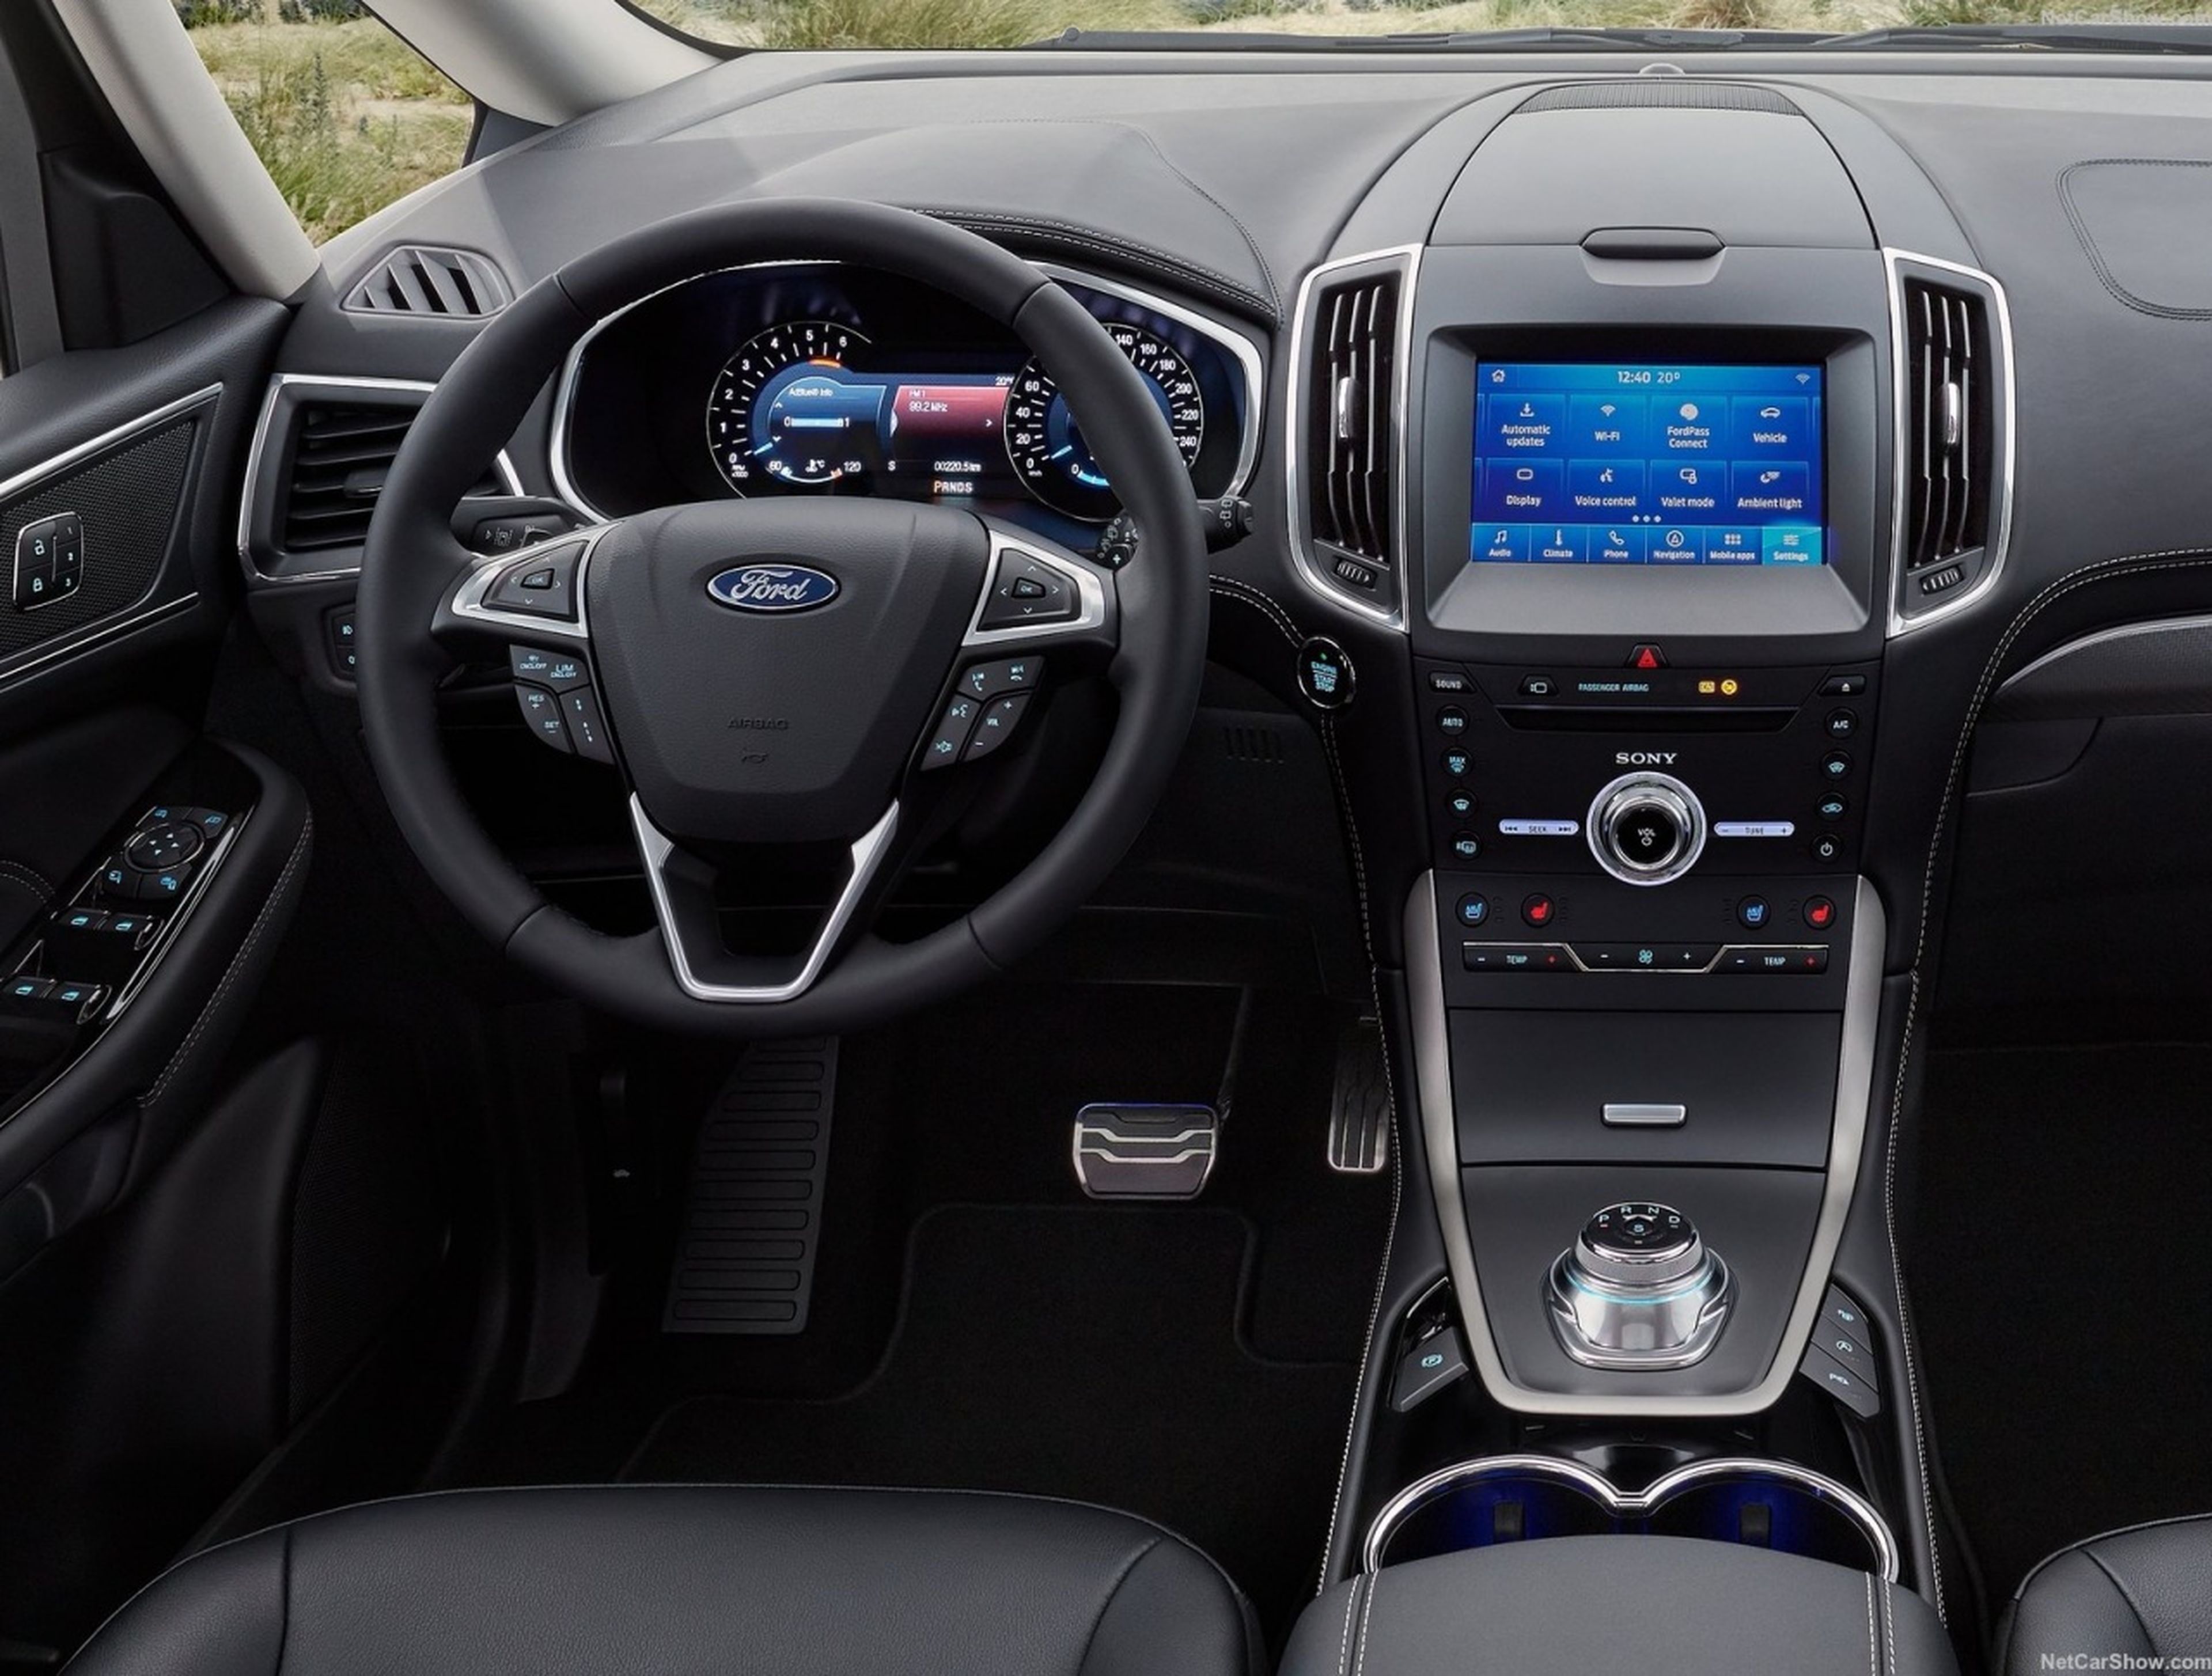 Ford Galaxy interior